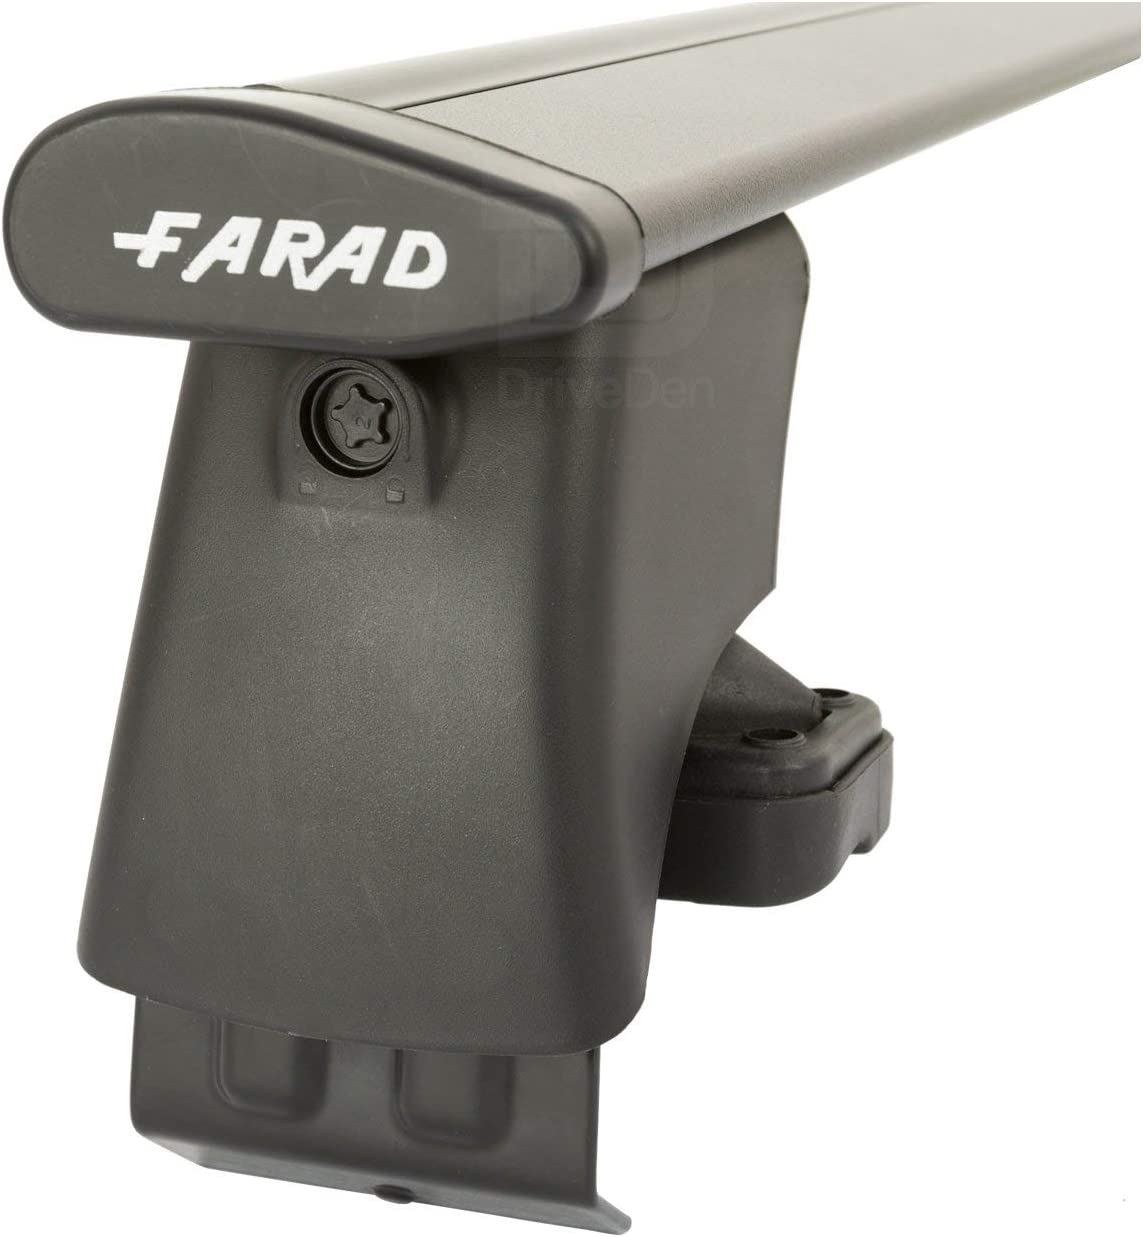 FARAD-Kit H2 per barre portatutto - Citroen C4 Picasso 2006-2012 (senza corrimano)